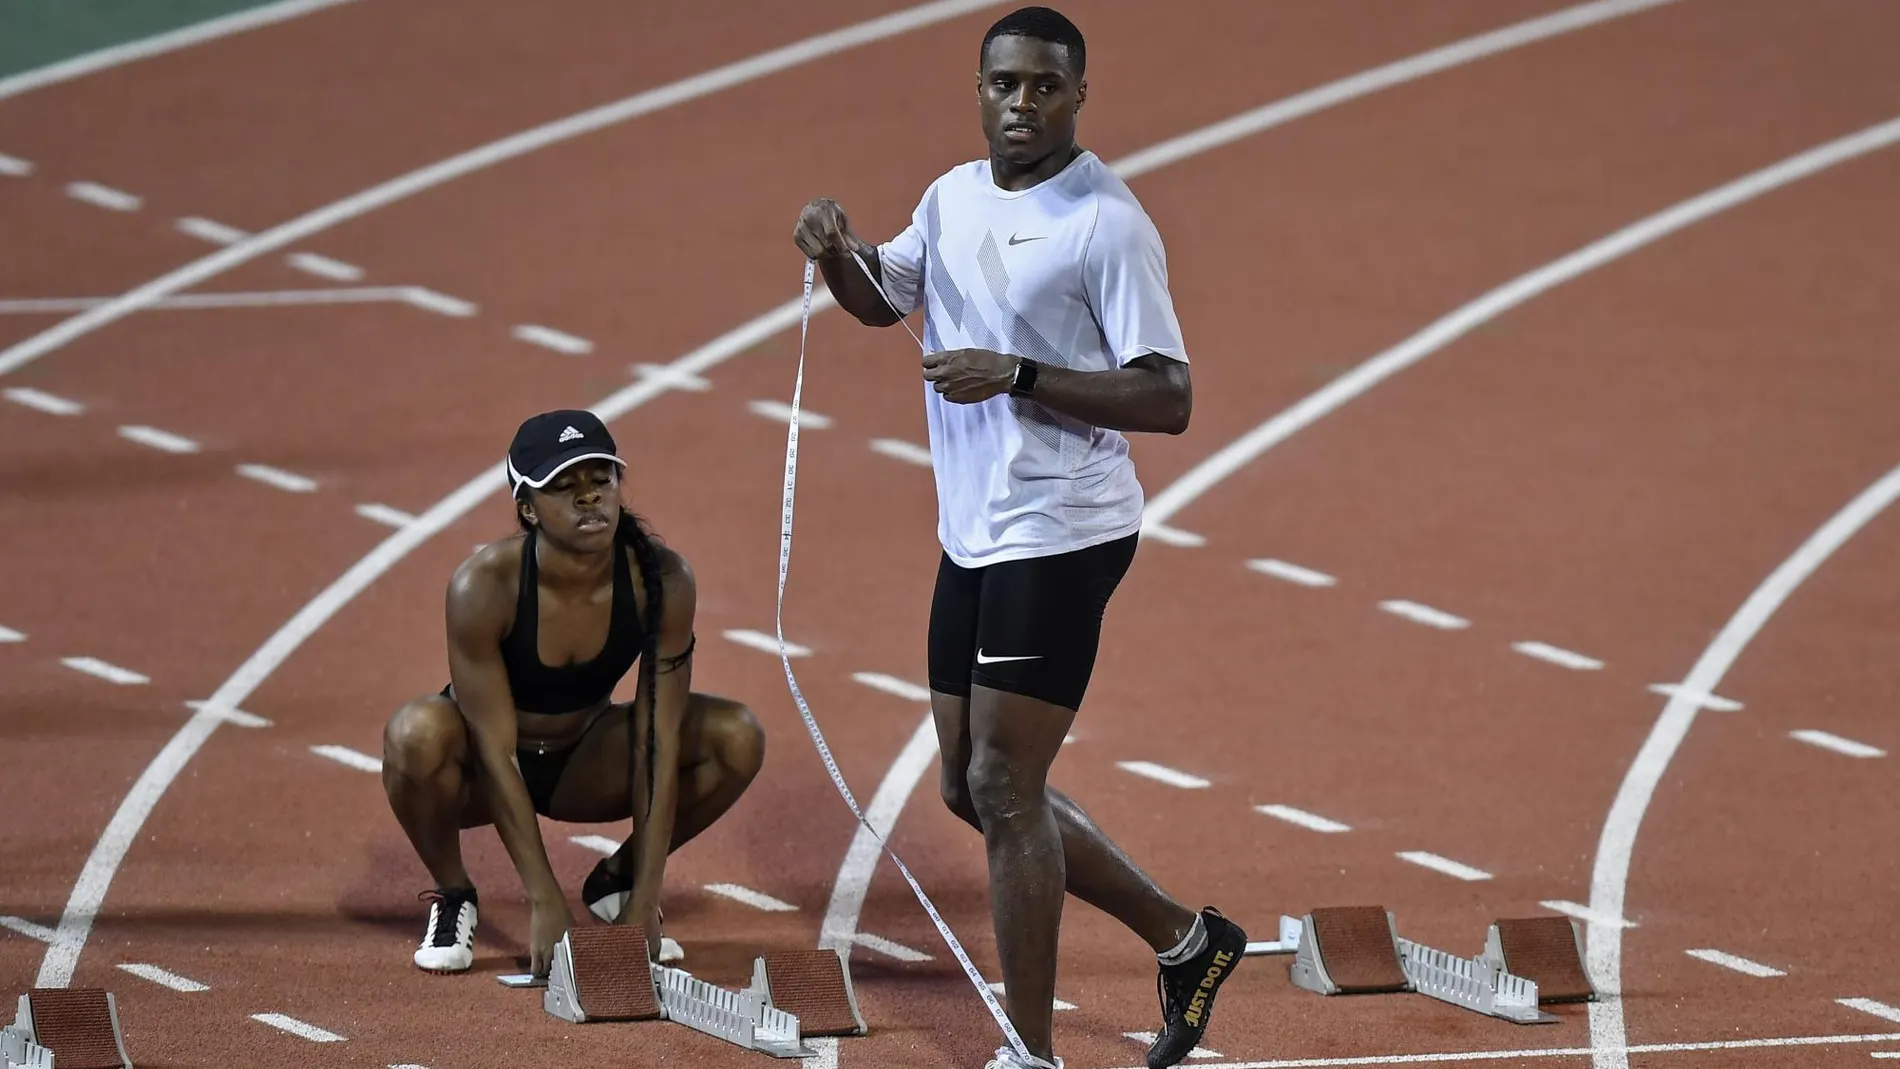 Comienza el Mundial de atletismo: ¿quién será el heredero de Bolt?